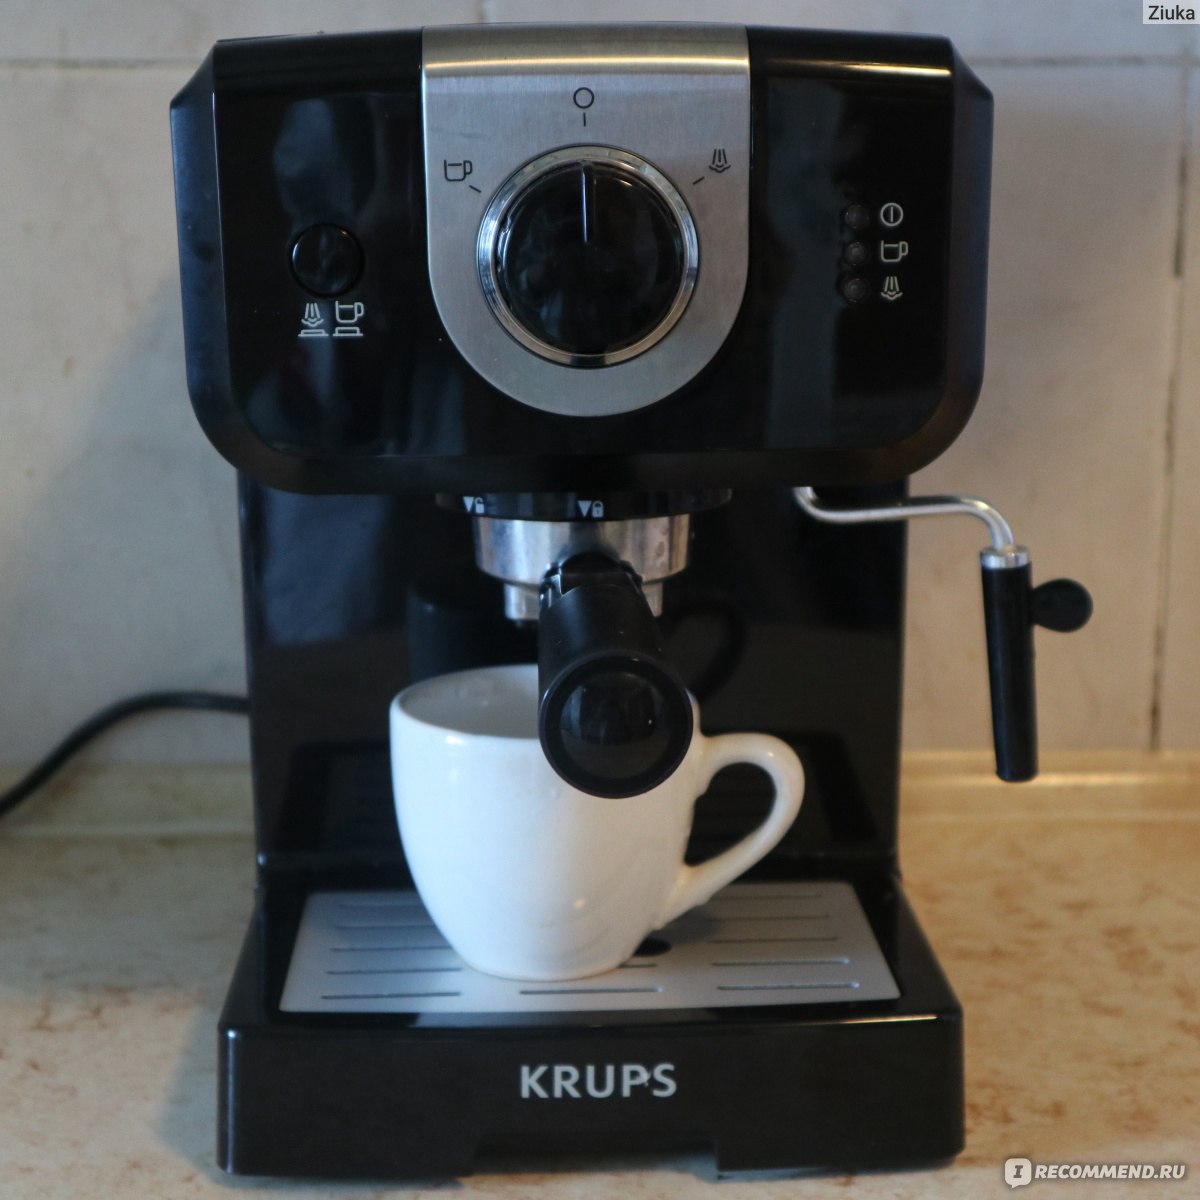 Инструкция кофеварки Krups 880 VIVO